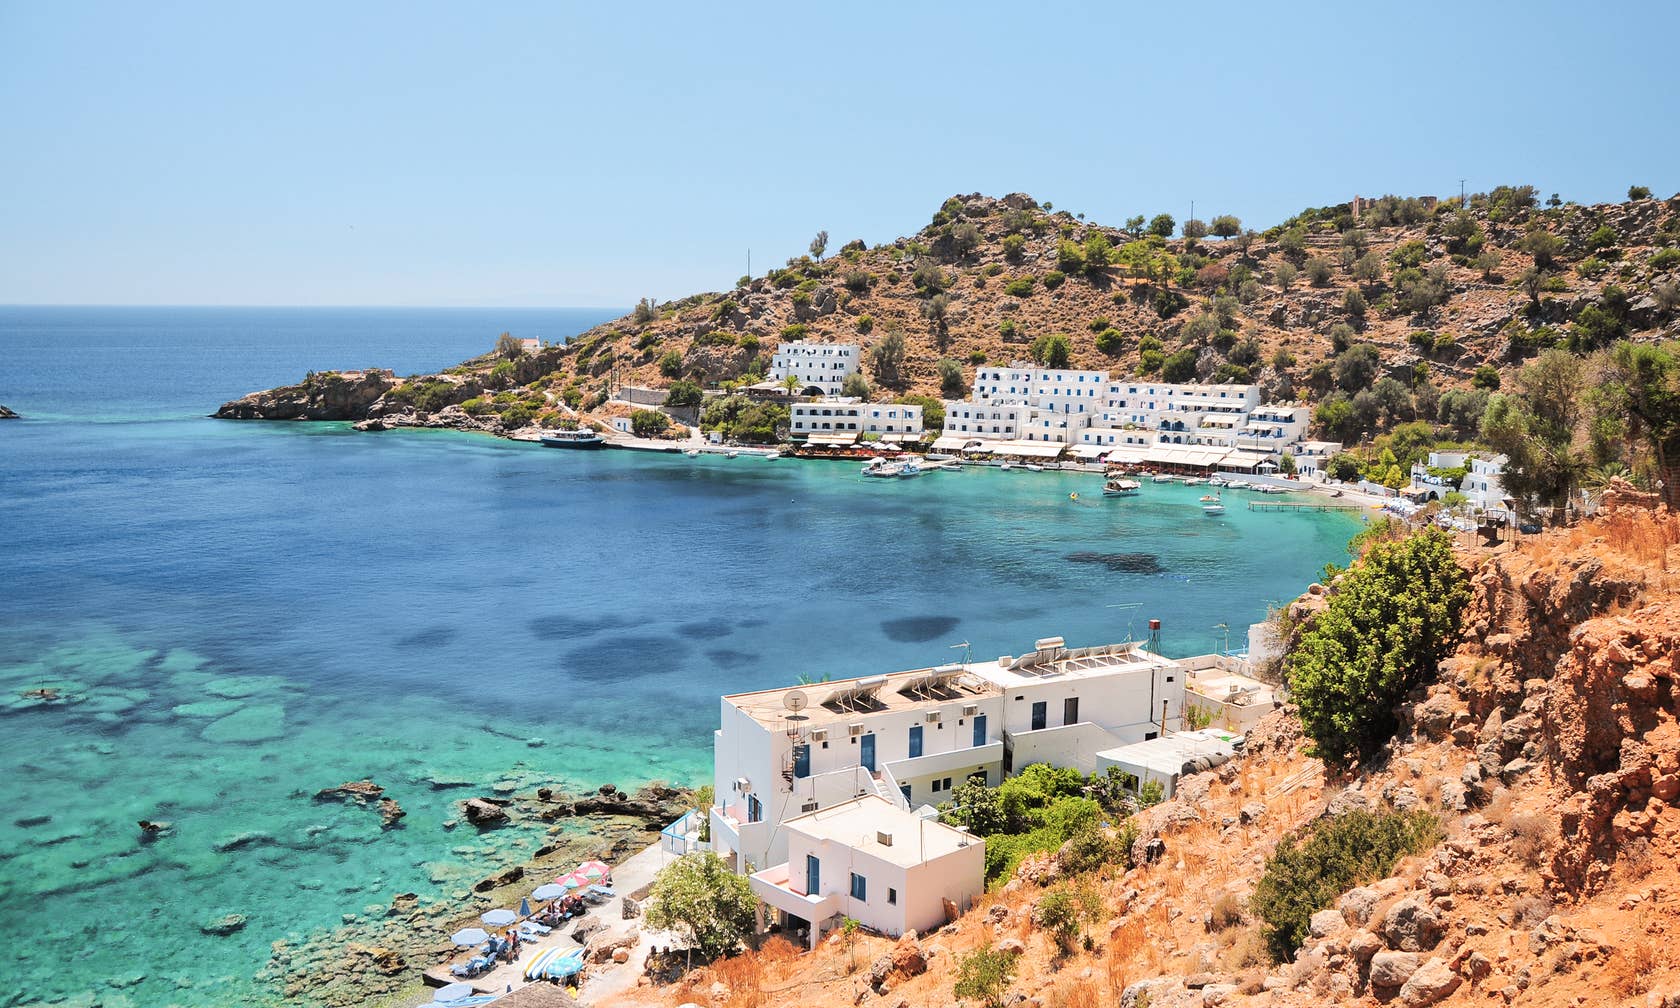 Ferienunterkünfte in Kreta